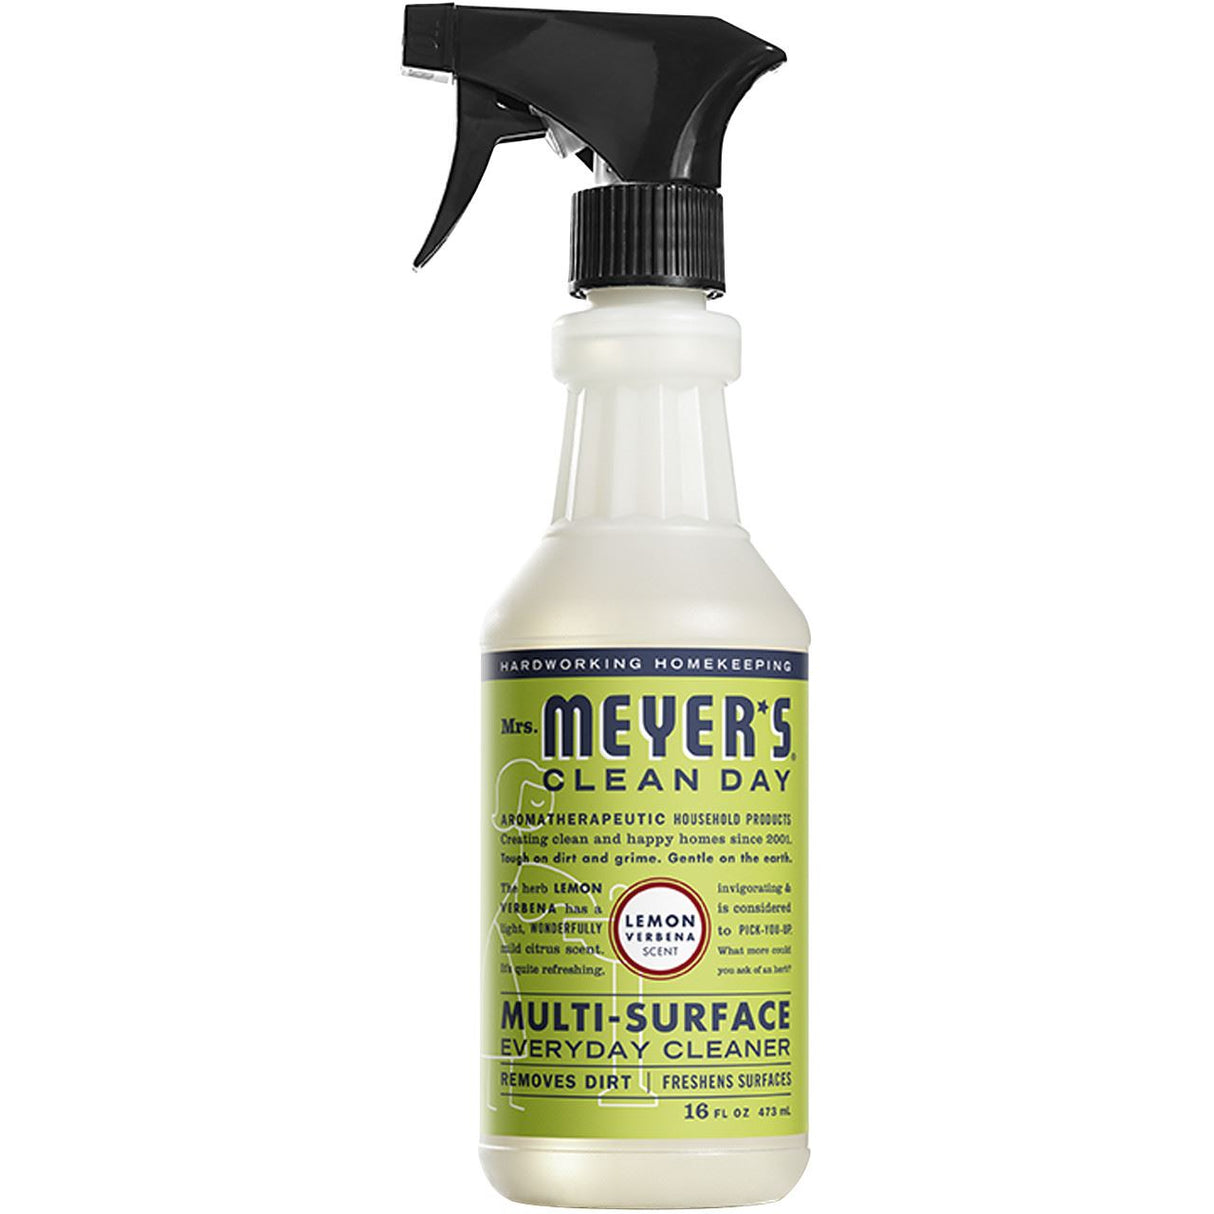 Mrs. Meyer's Lemon Verbena Multi-Surface Everyday Cleaner